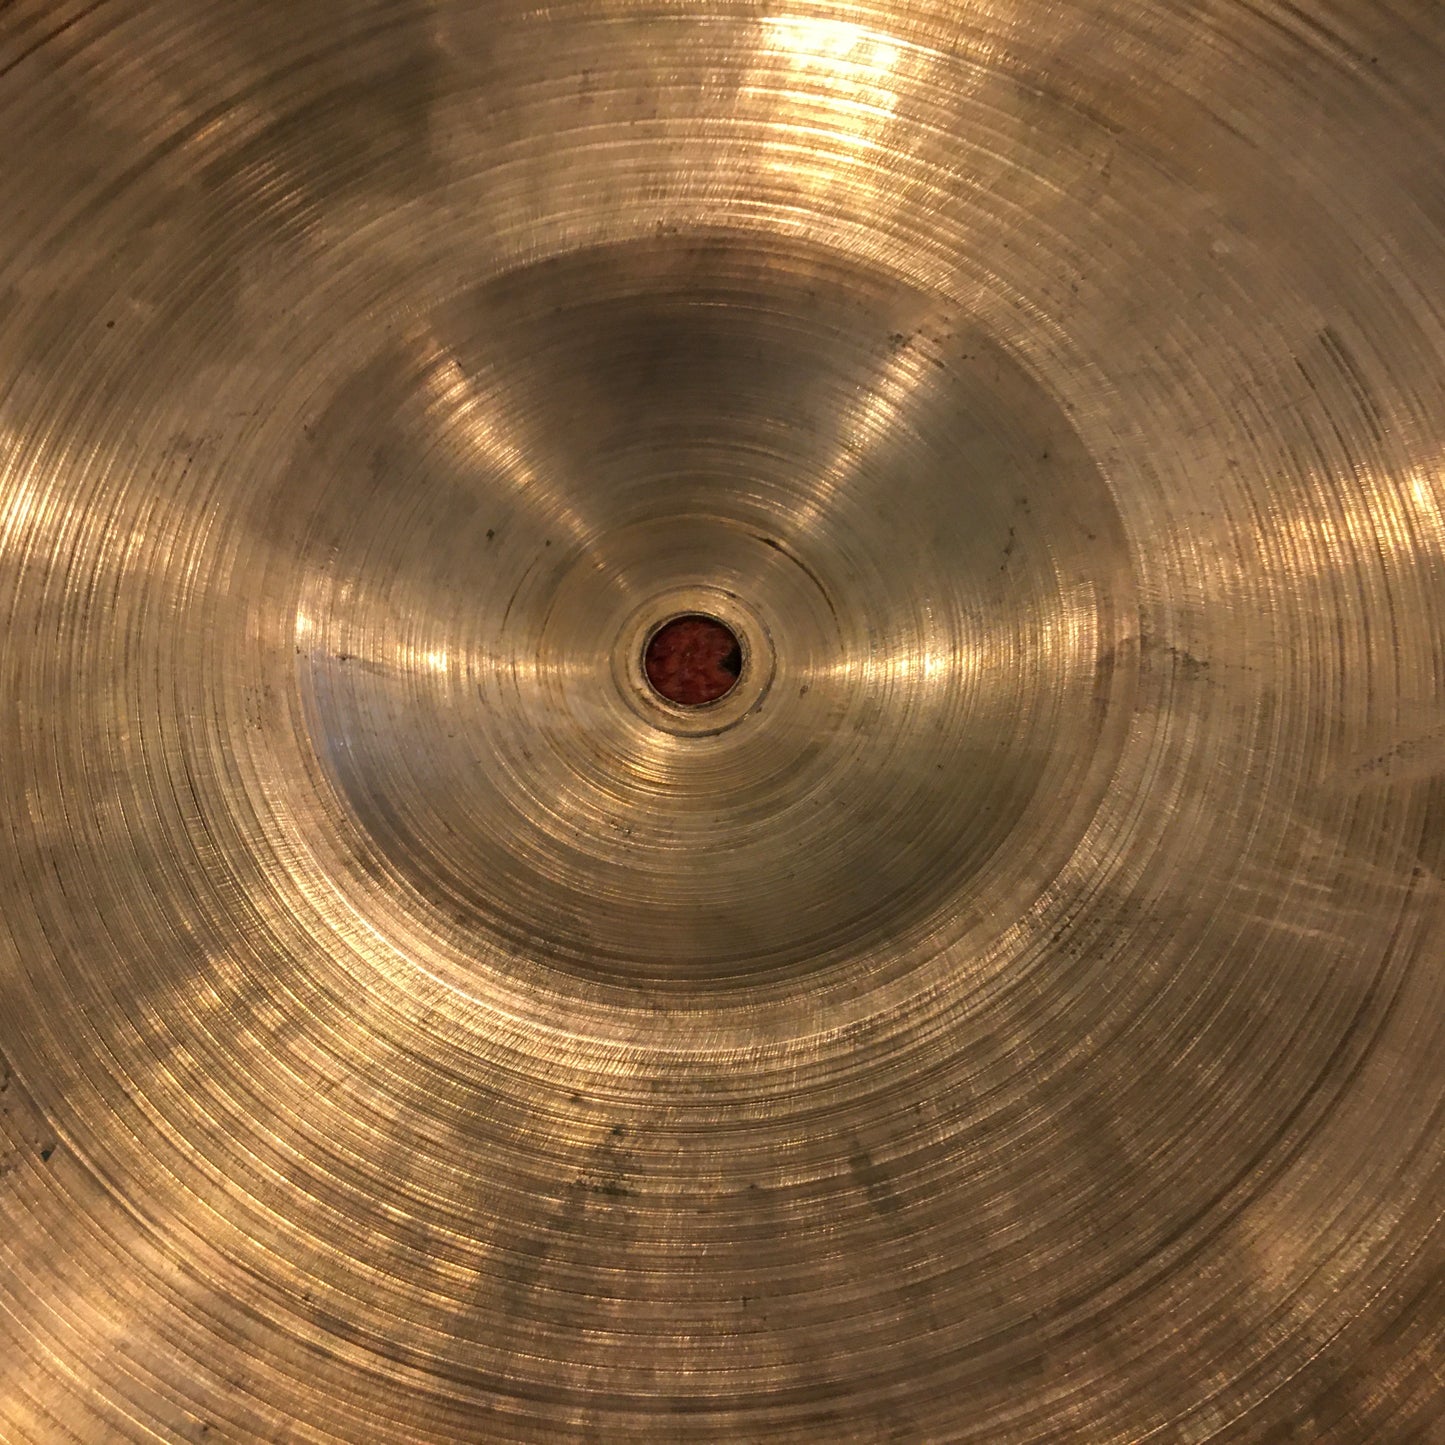 15" Zildjian A 1950s Hi Hat Cymbal Single 1068g #593